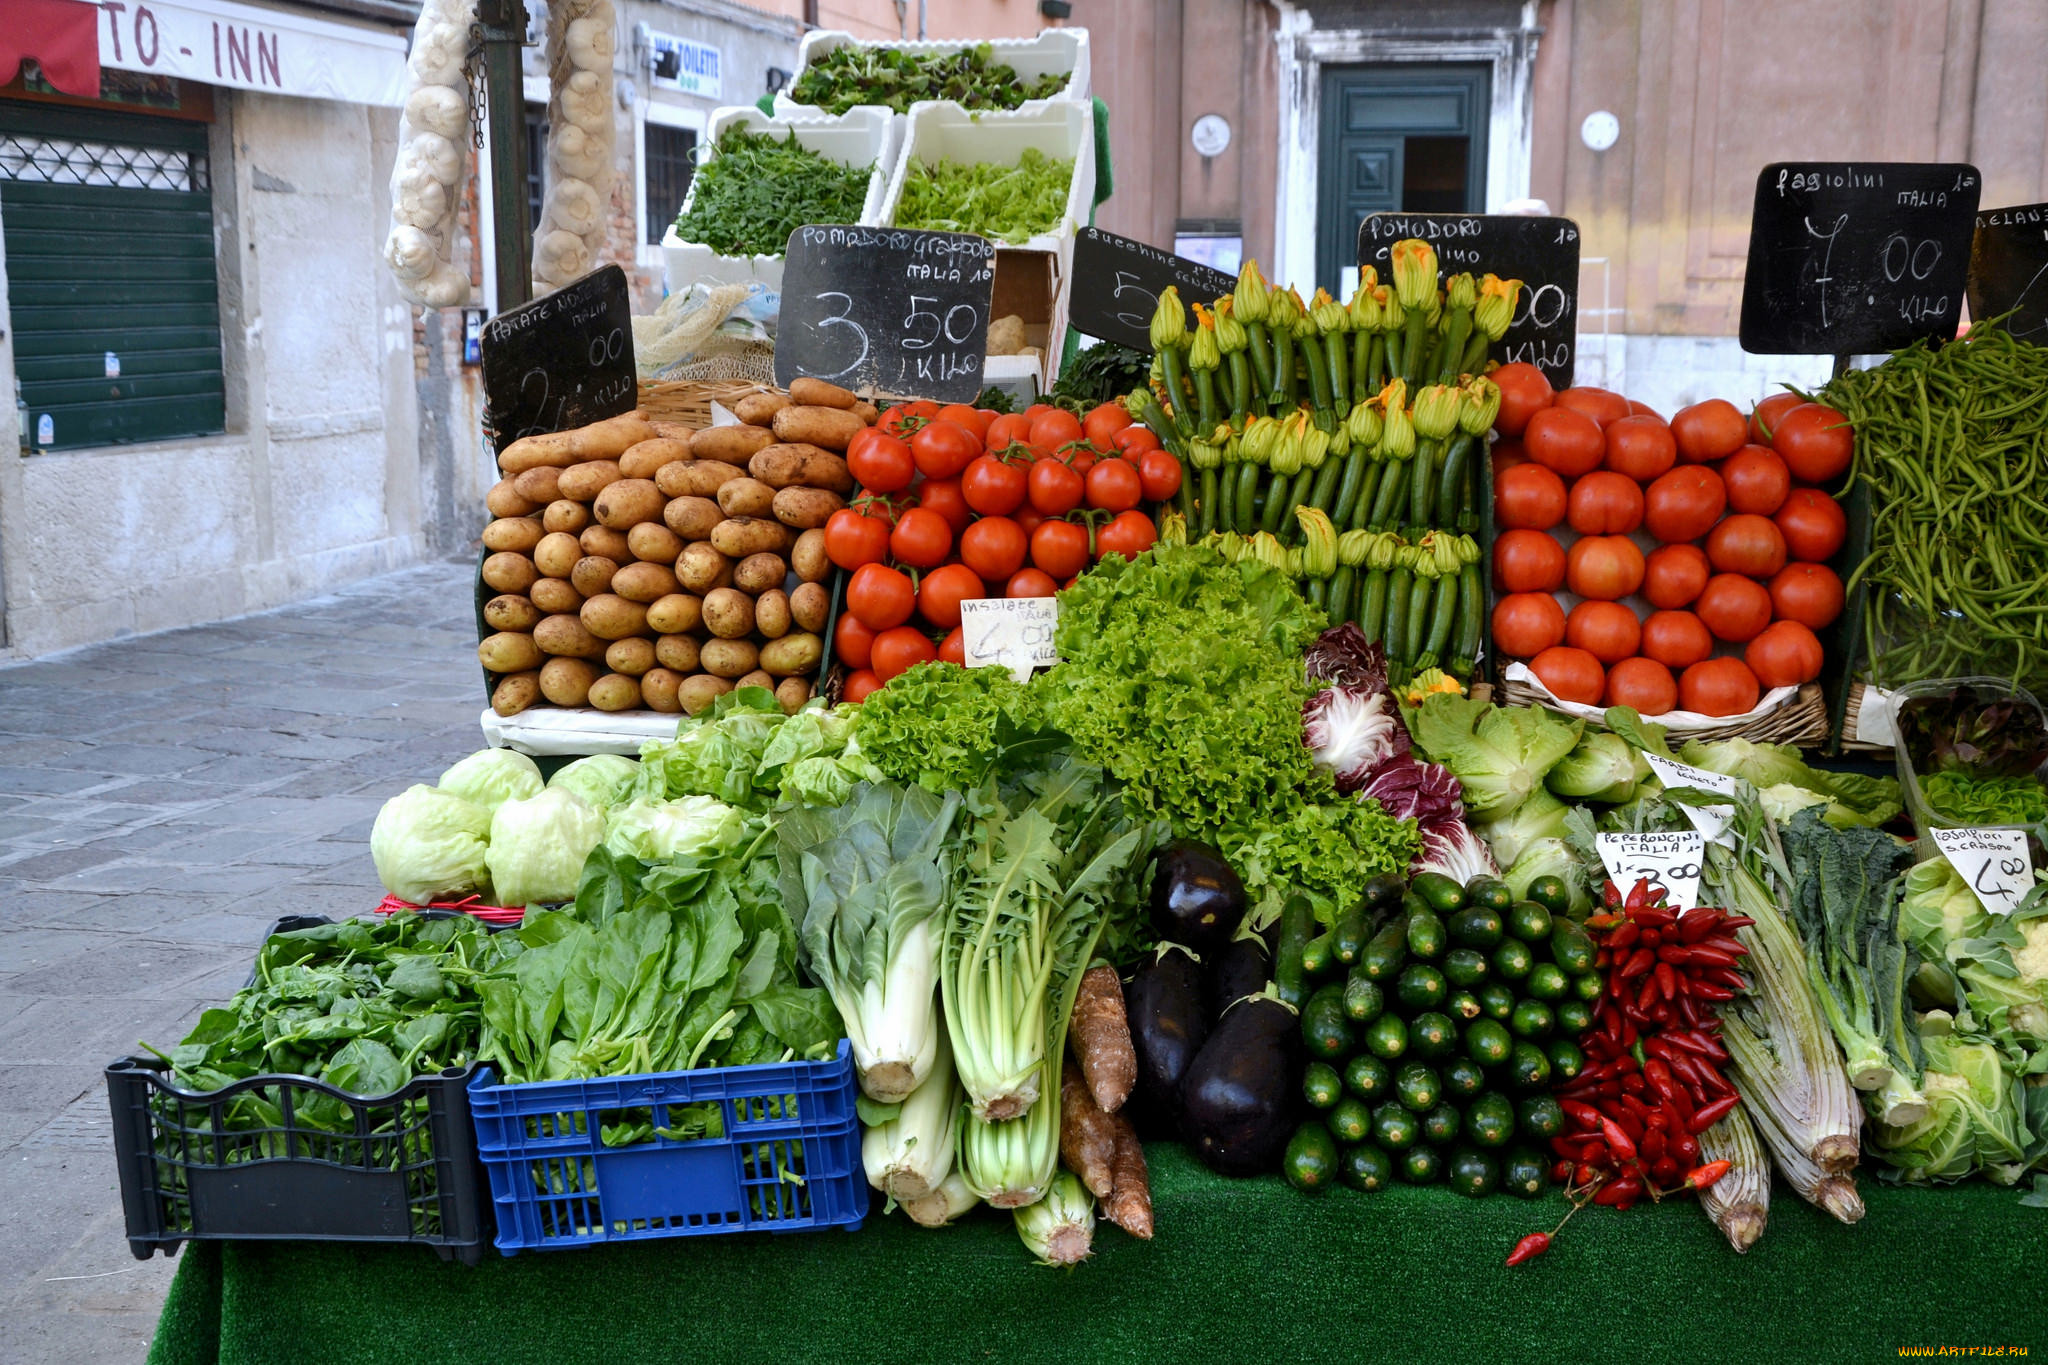 Фрукты овощи на ц. Овощи на прилавке. Овощи на рынке. Прилавок с овощами и фруктами. Выкладка овощей и фруктов на рынке.